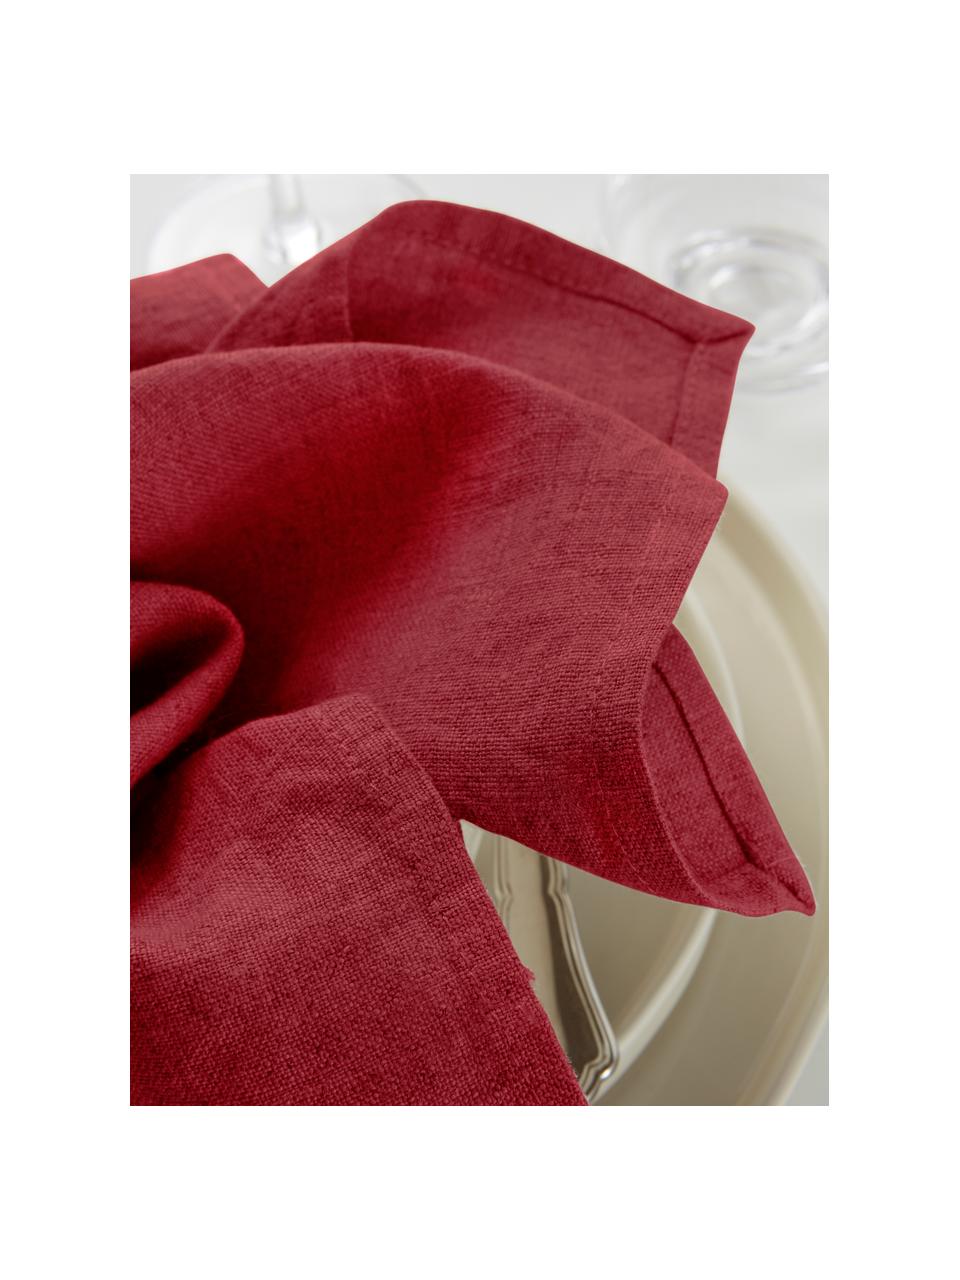 Leinen-Servietten Heddie in Rot, 2 Stück, 100% Leinen, Rot, 45 x 45 cm